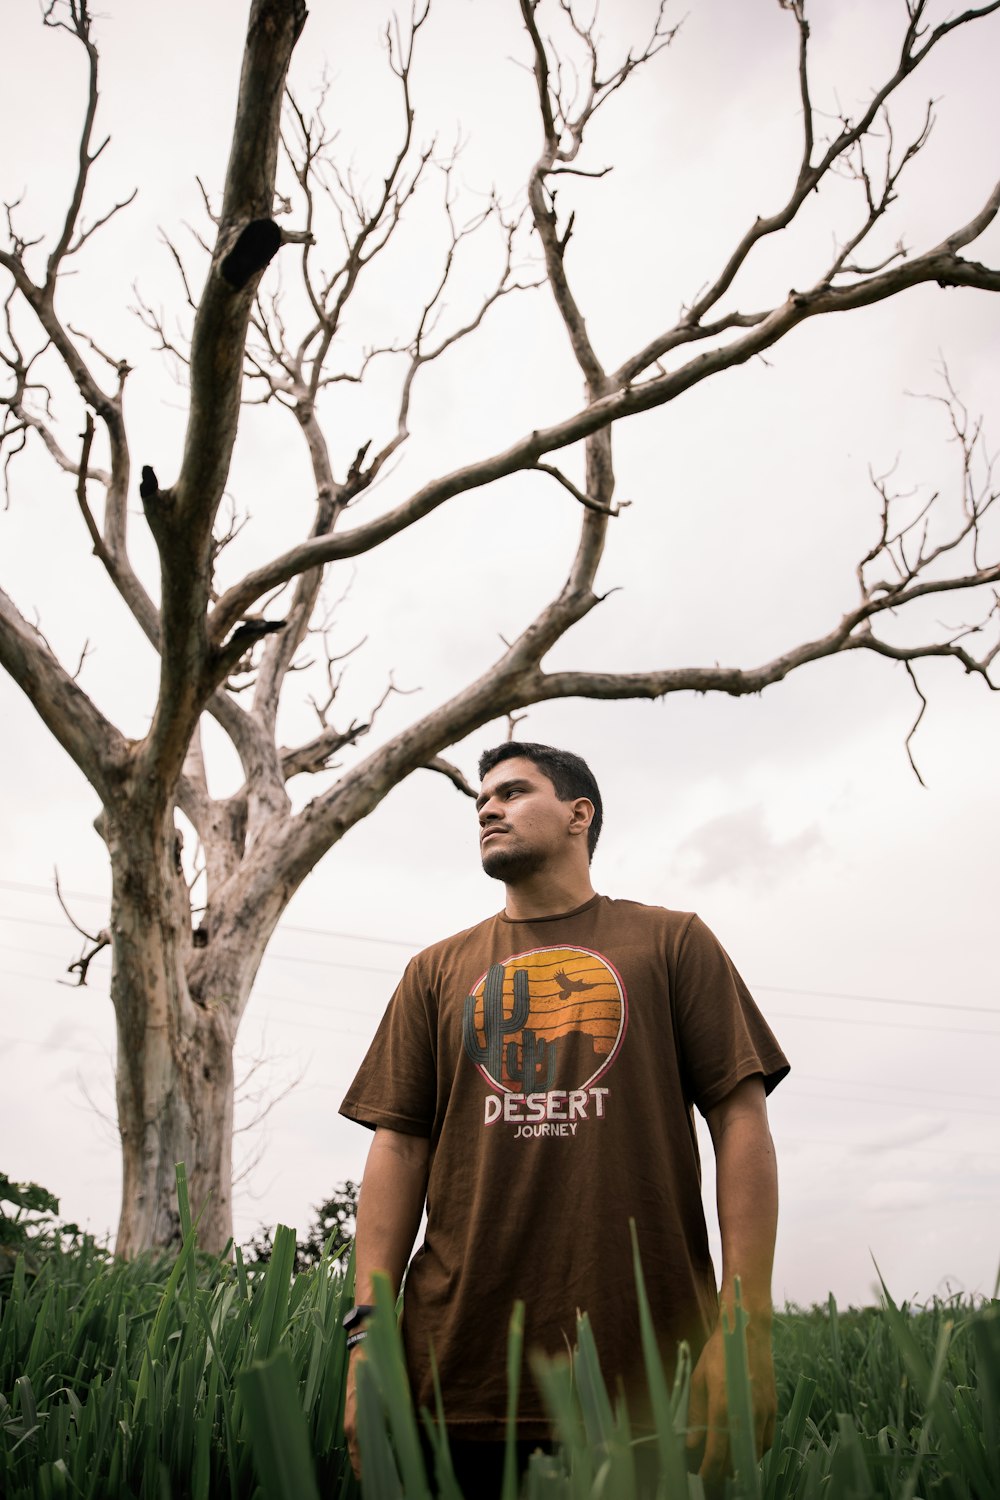 Mann im grauen Rundhals-T-Shirt tagsüber neben kahlem Baum